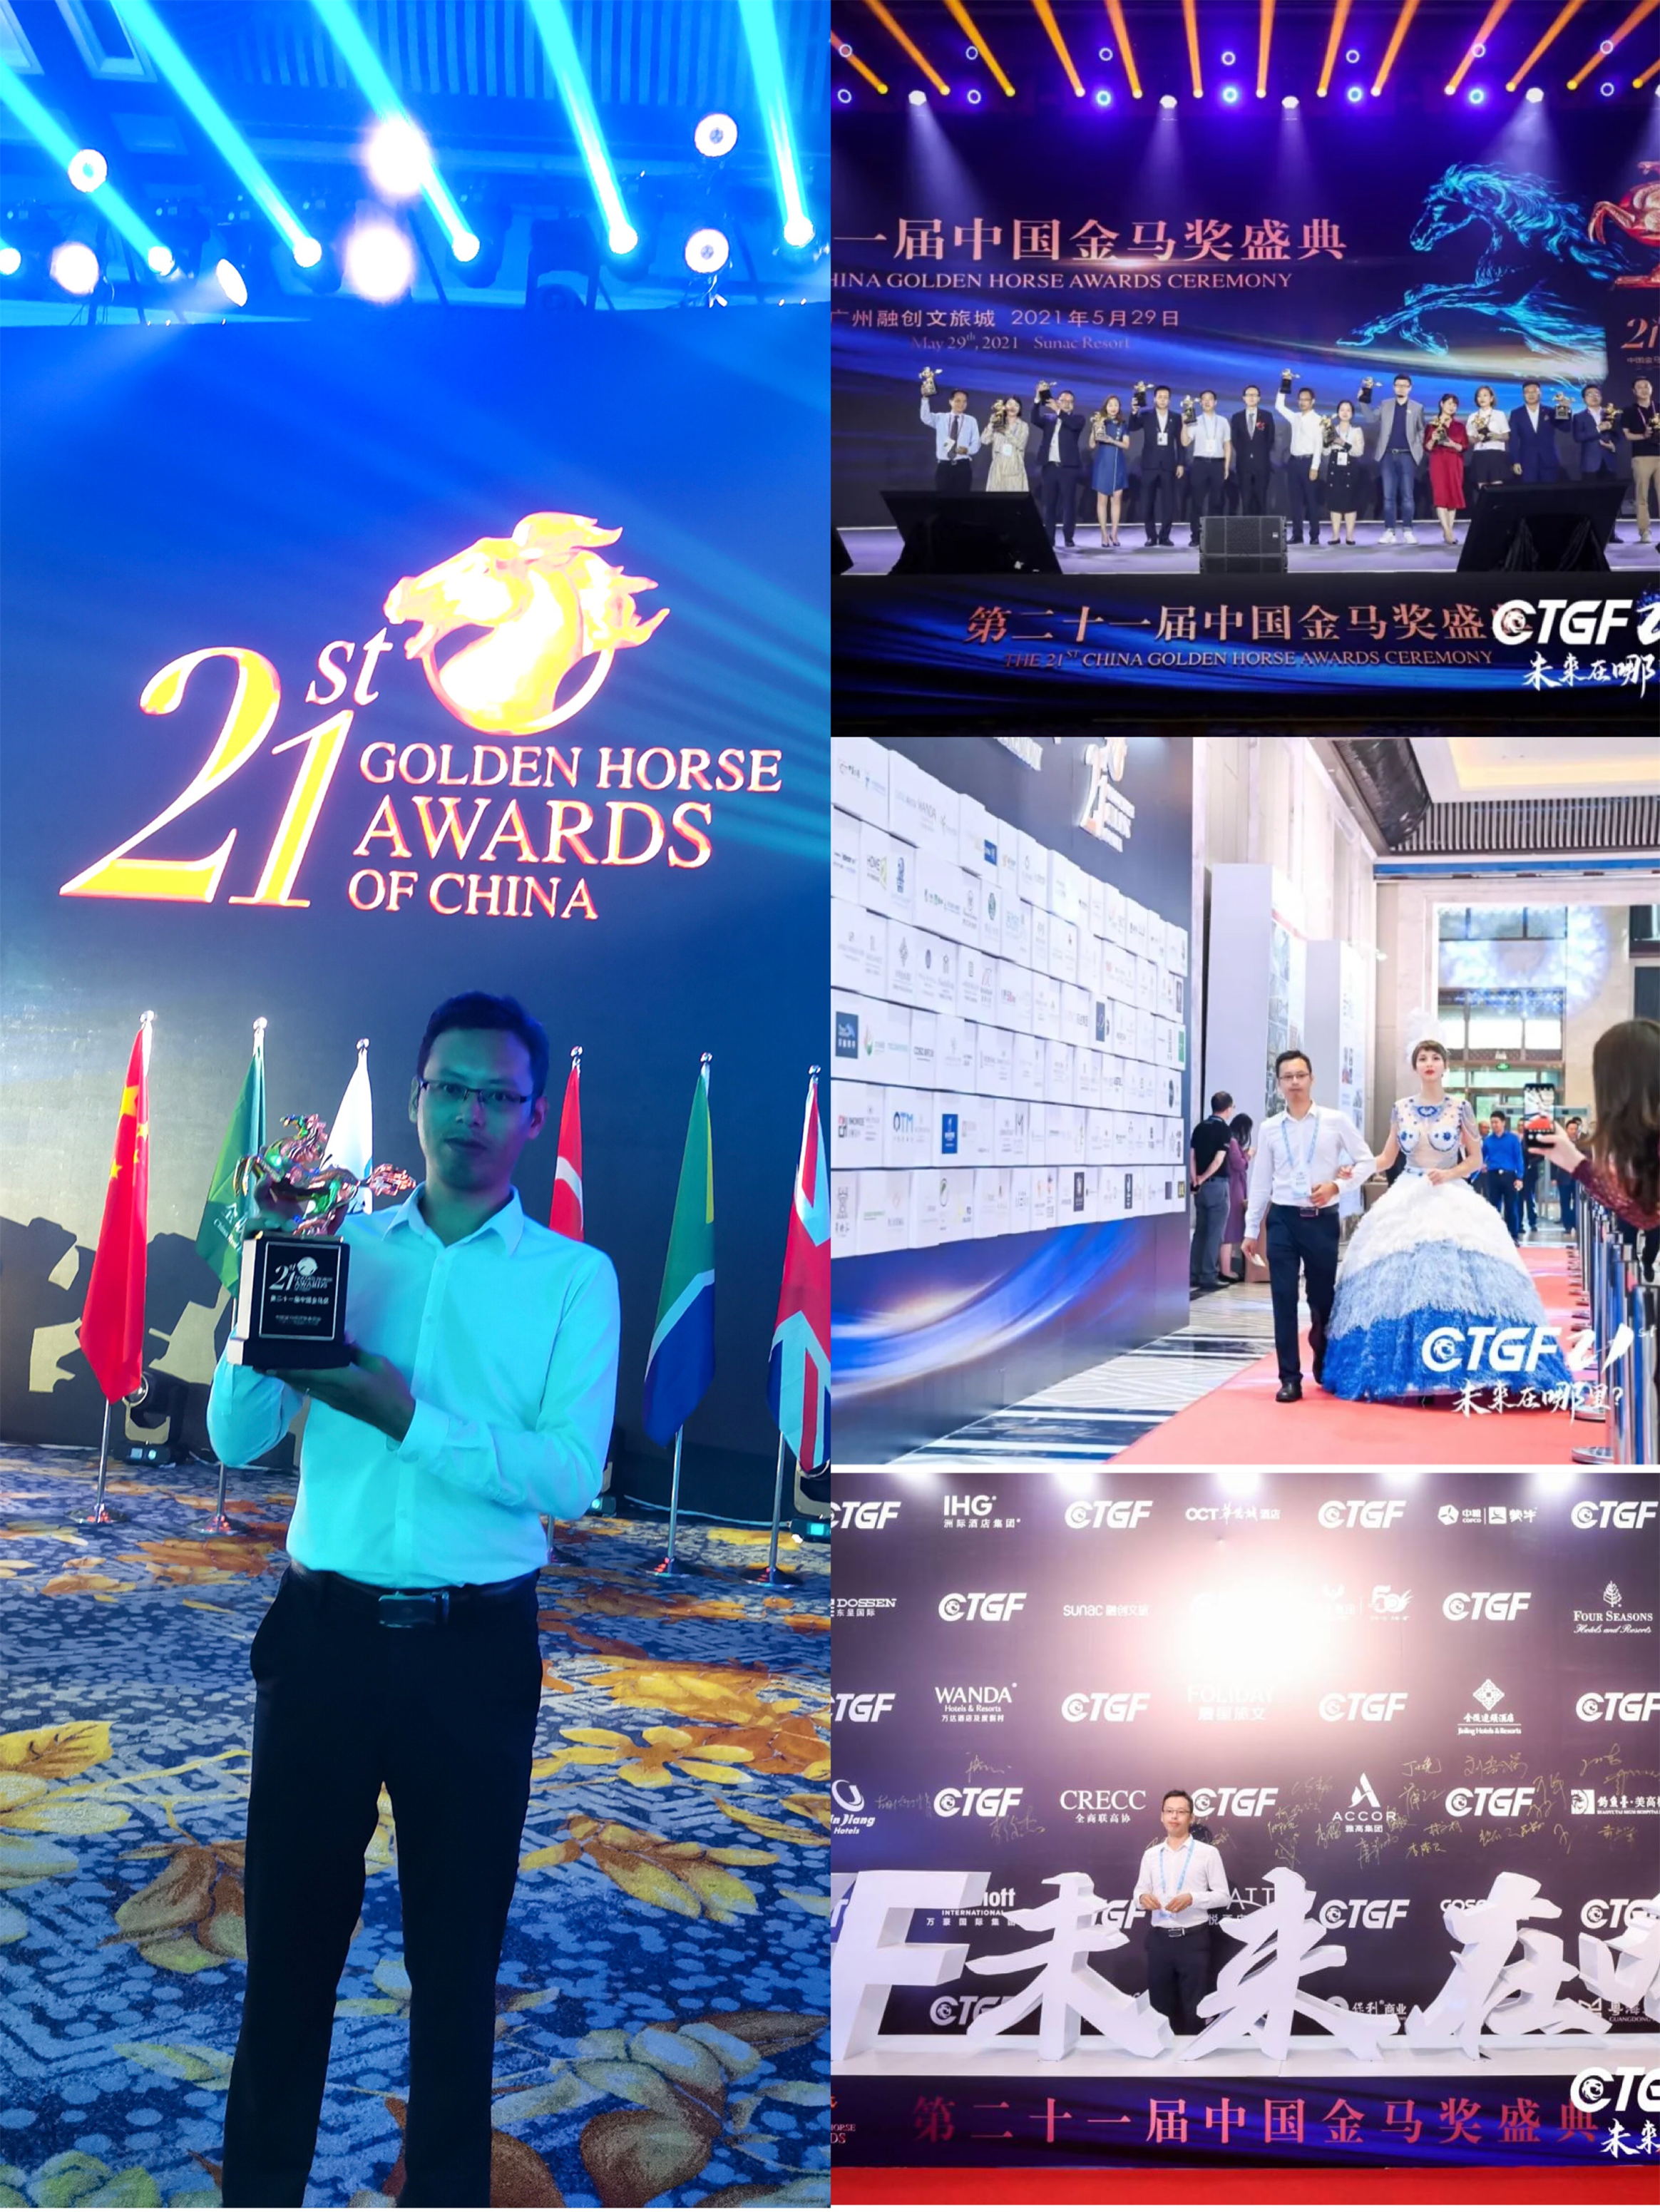 艾呦呦在第二十一届中国金马奖盛典上荣获“中国最佳房地产及酒店健康新材料供应商”